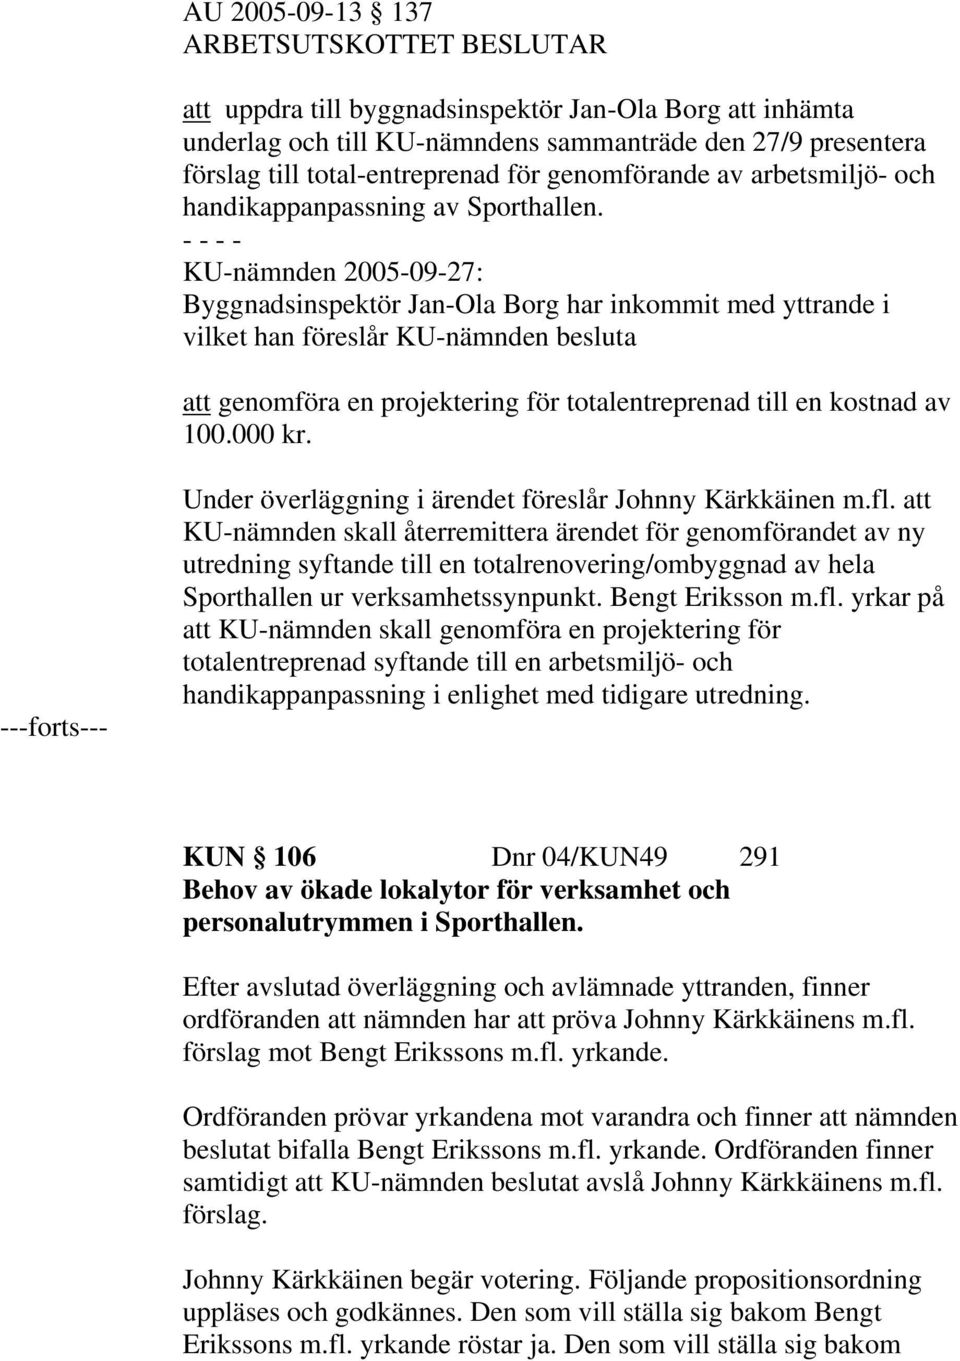 KU-nämnden 2005-09-27: Byggnadsinspektör Jan-Ola Borg har inkommit med yttrande i vilket han föreslår KU-nämnden besluta att genomföra en projektering för totalentreprenad till en kostnad av 100.